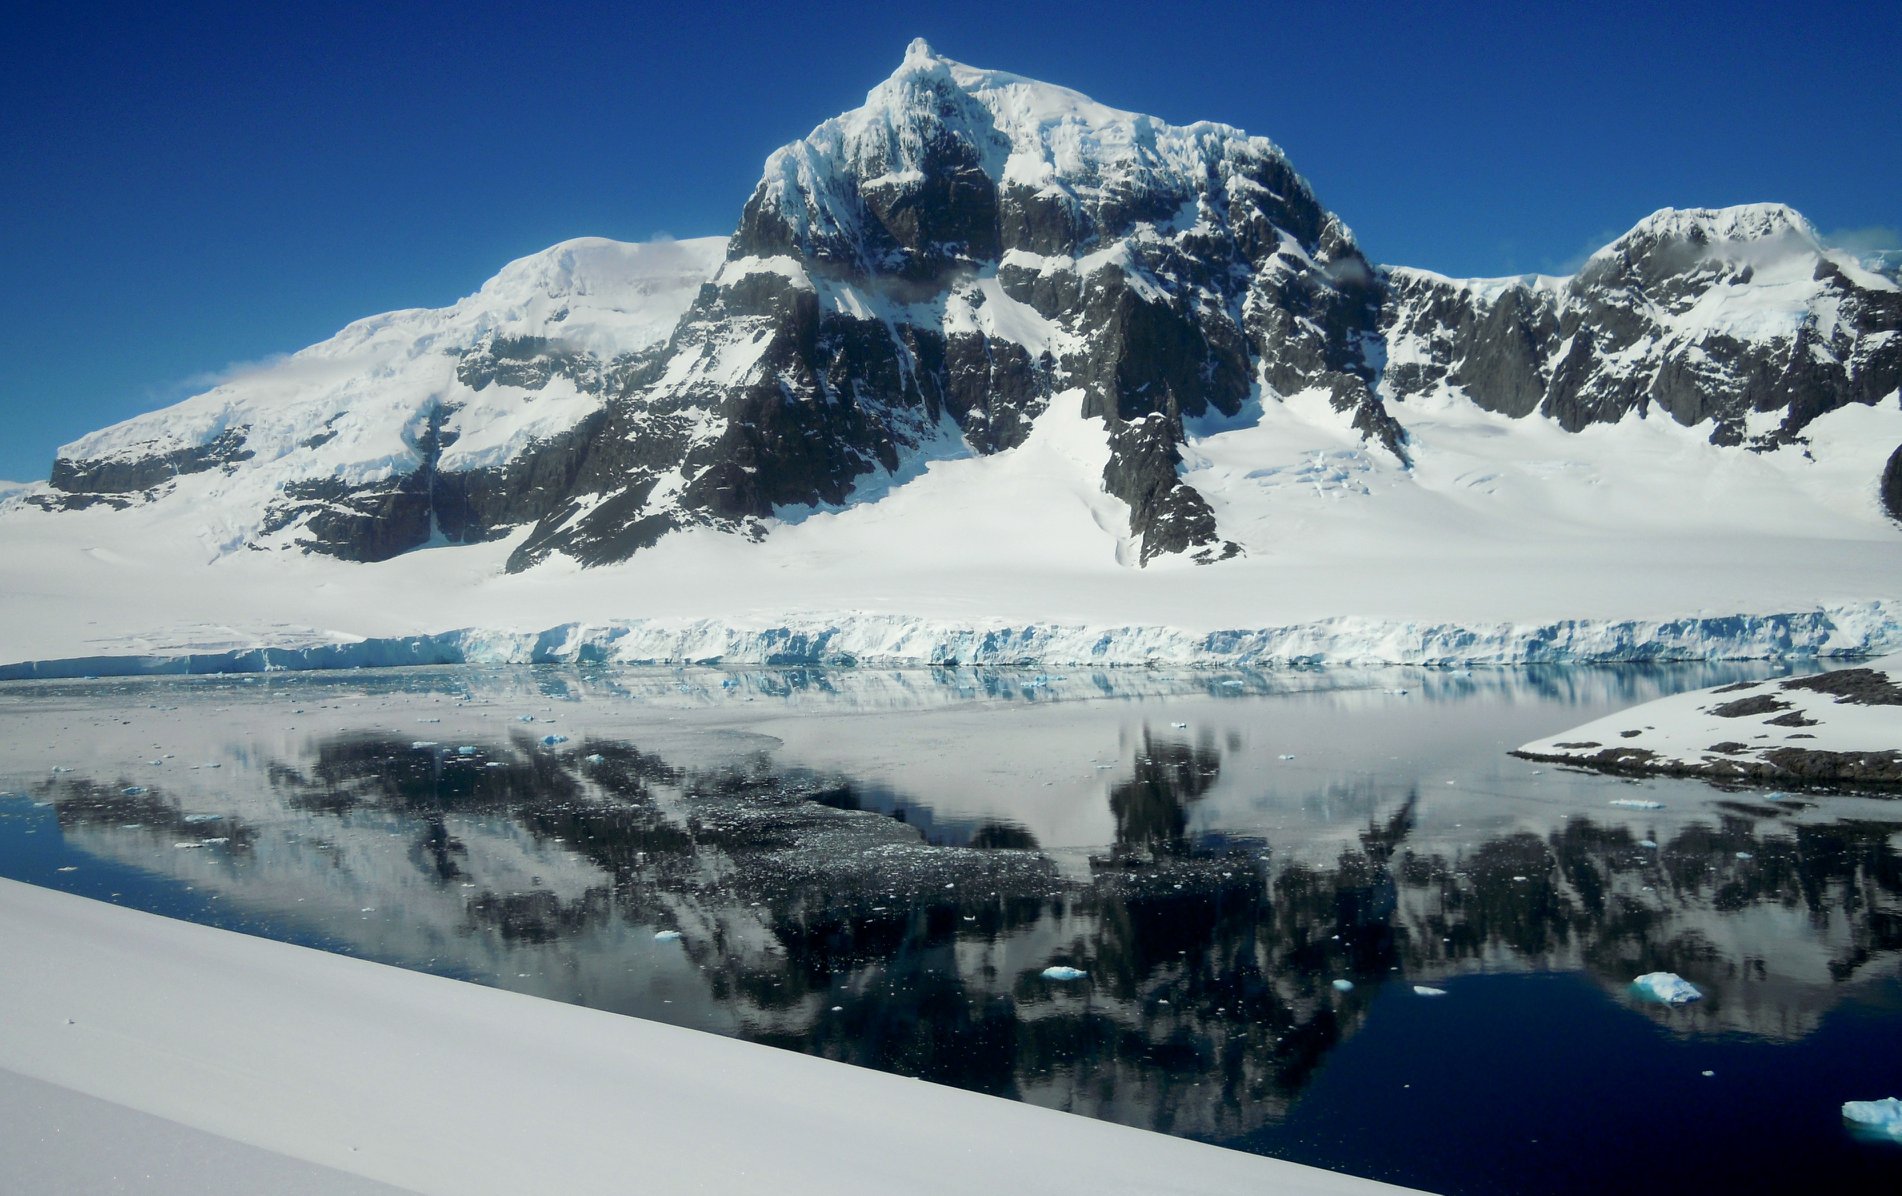 вершина горы Пицдач (Monte Pizduch) высотой в 1000 метров, массив Вит (Mount Wheat), остров Винке (Wiencke Island), Антарктика. Фото Marek Holeček